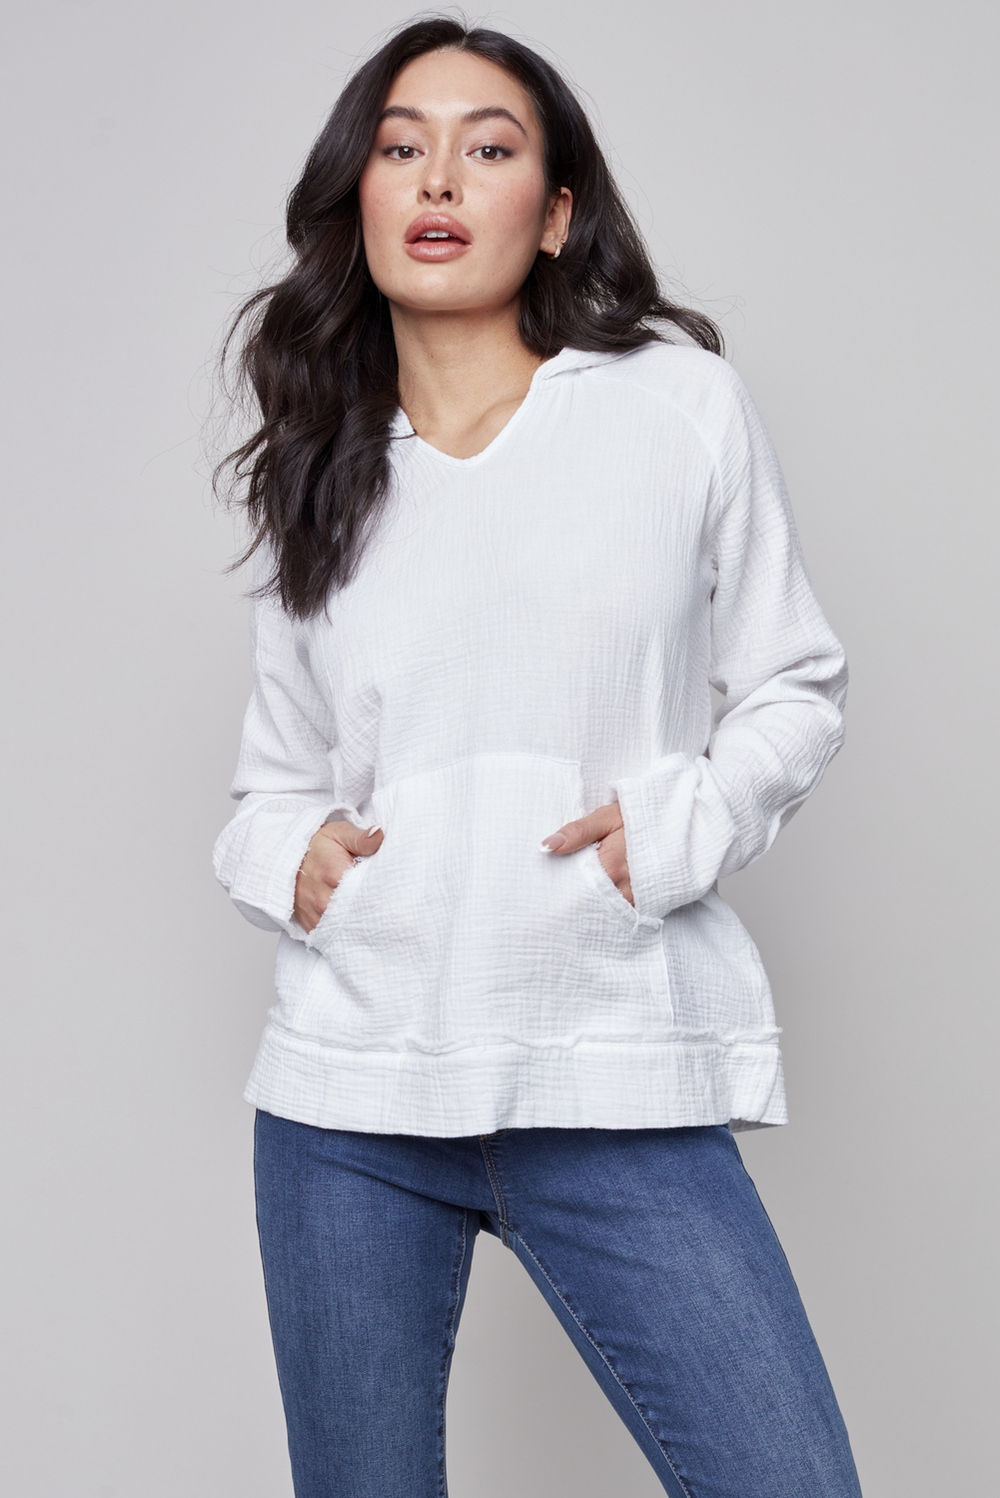 Sweater with Kangaroo Pocket Style C4445. White